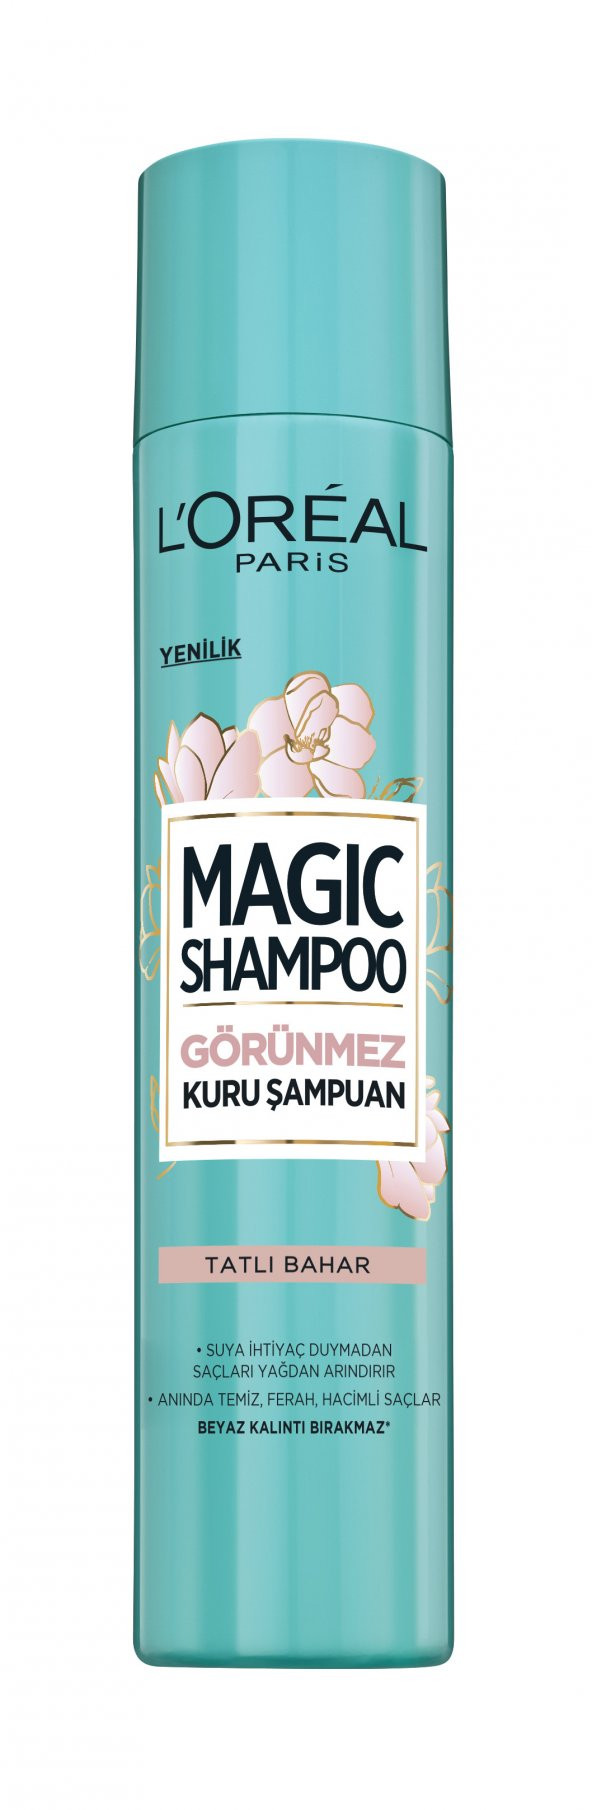 Magic Shampoo Tatlı Bahar Kuru Şampuan 200ml